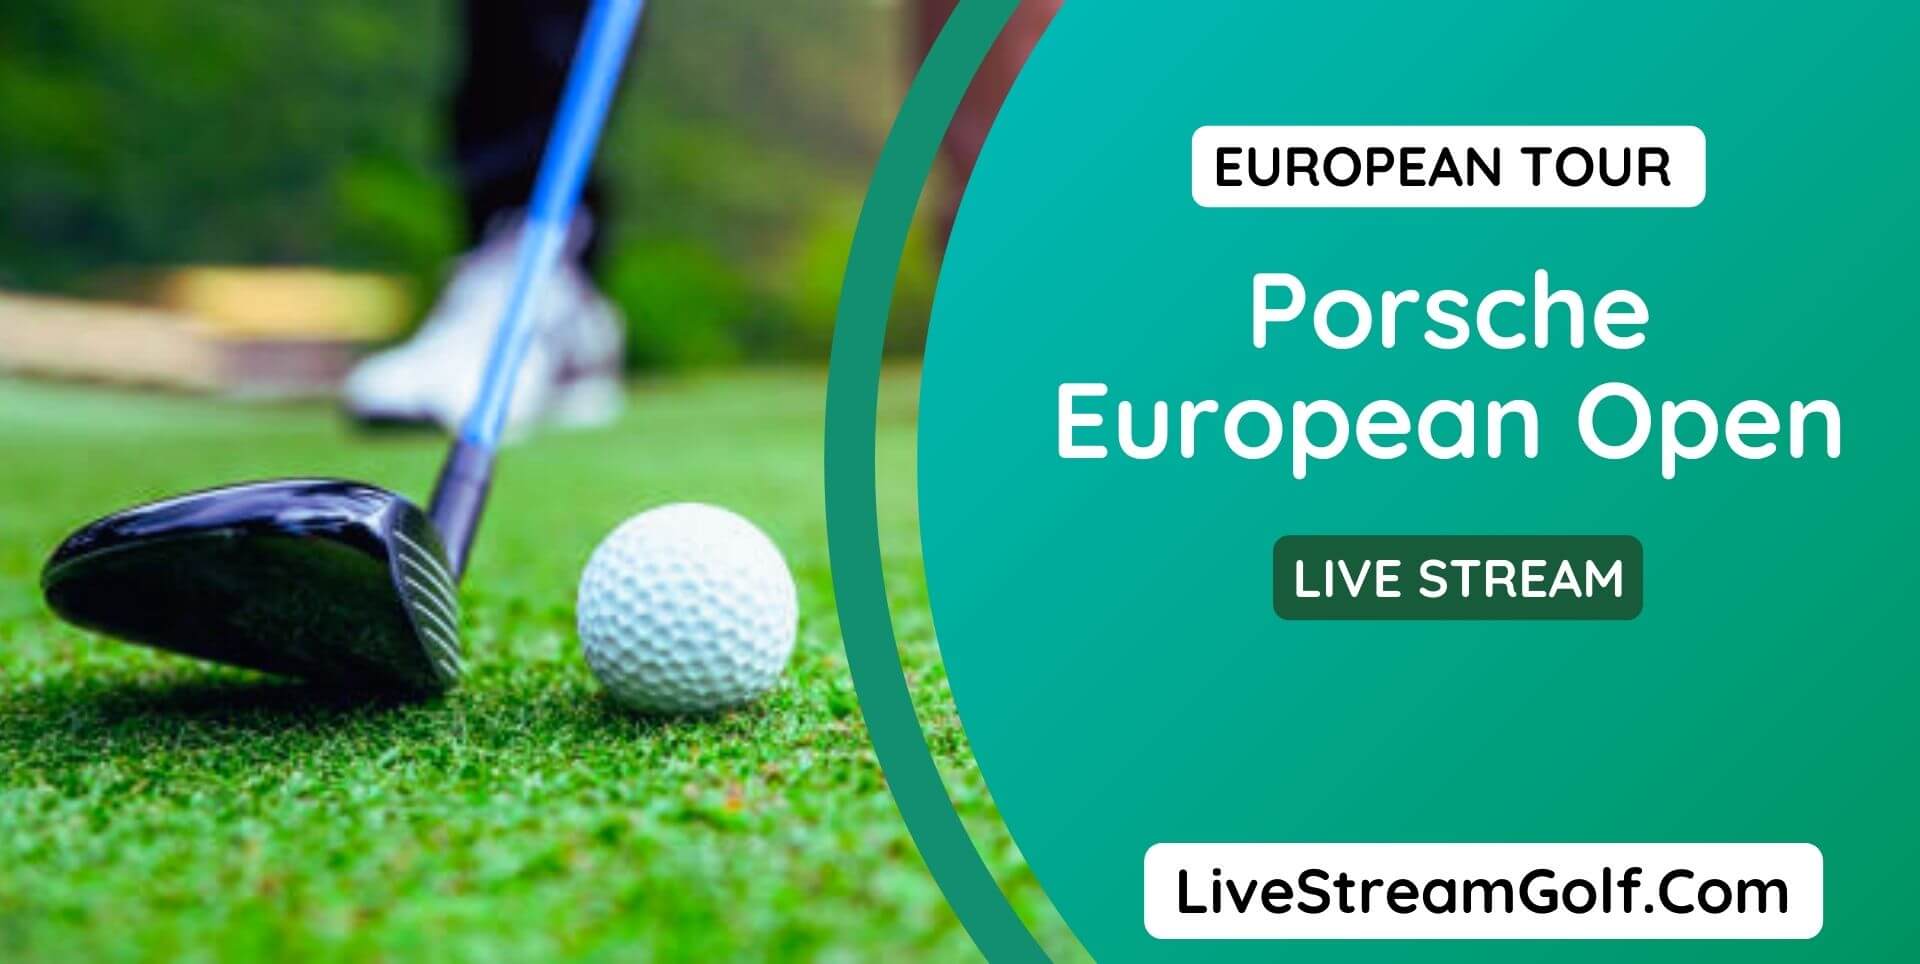 Porsche European Open Day 4 Live Stream: European Tour 2022